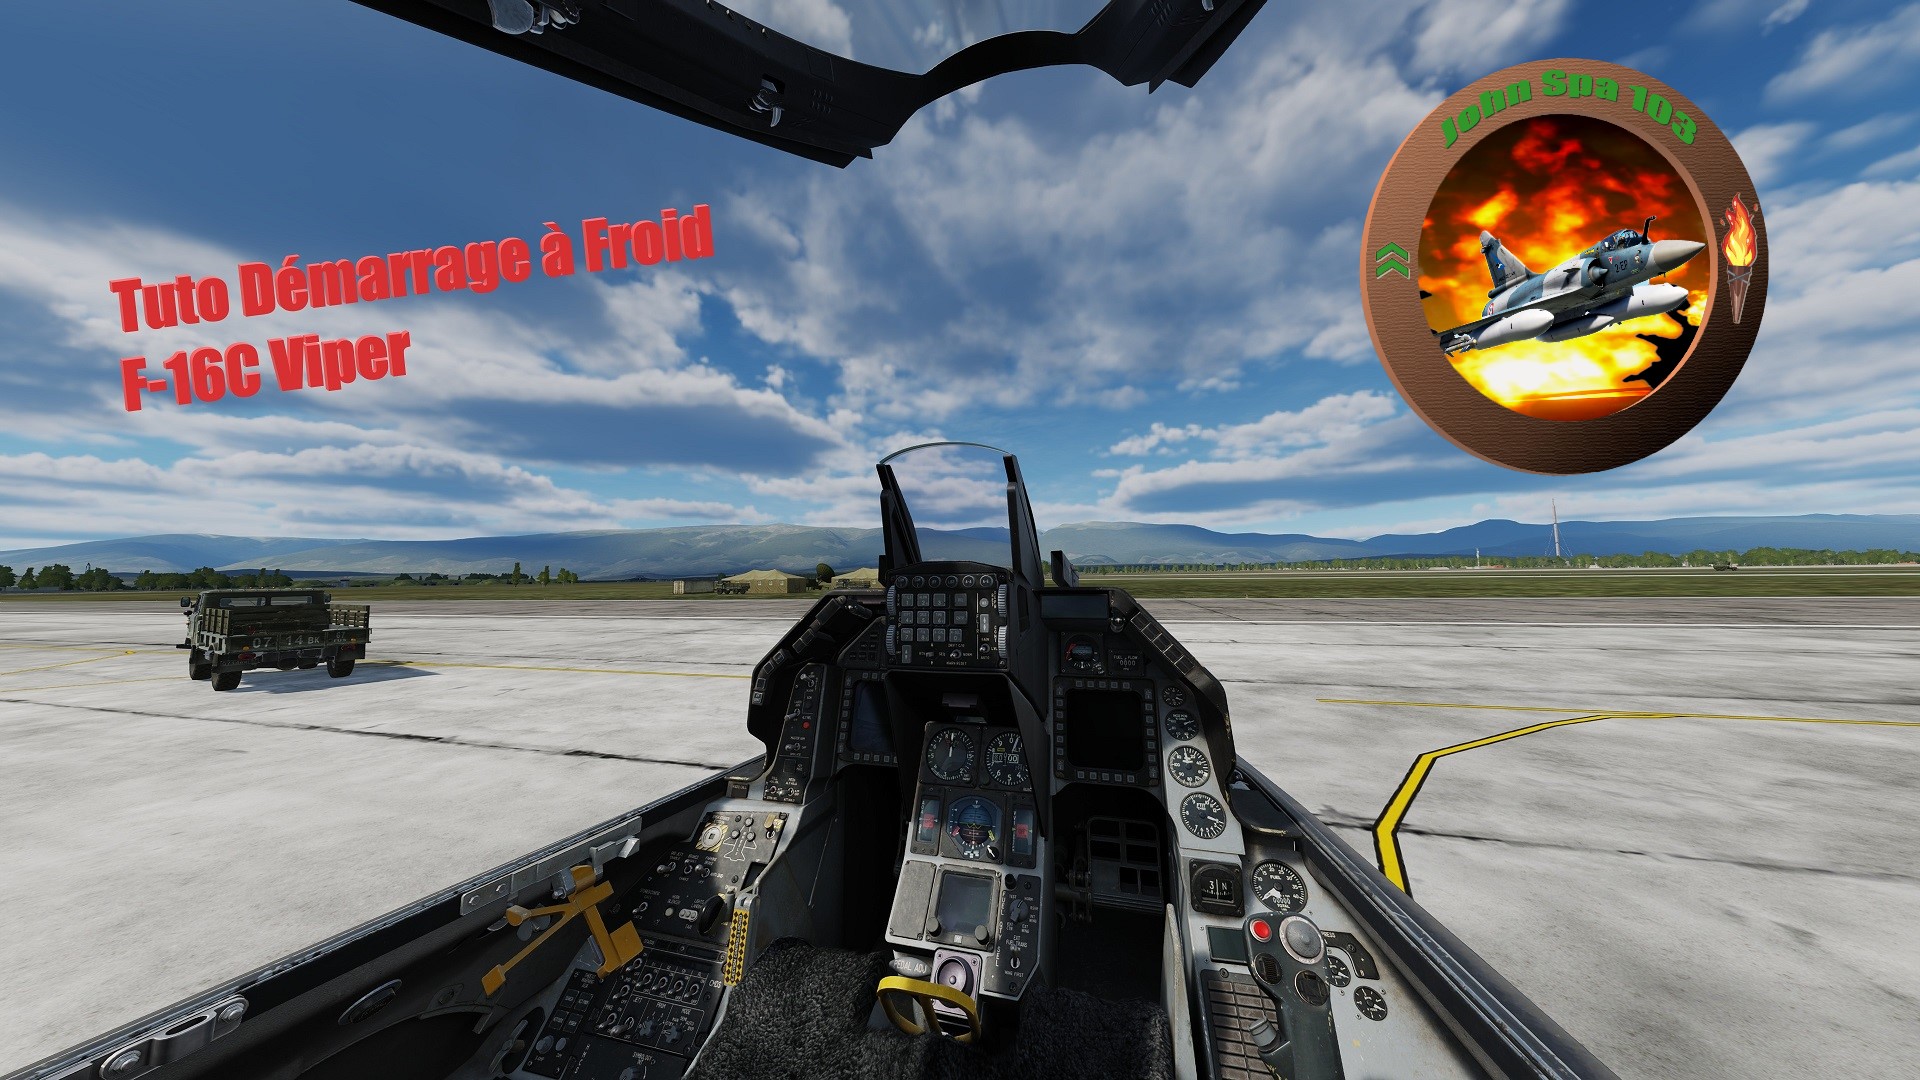 Mission Tutoriel du démarrage à Froid F-16C en Français